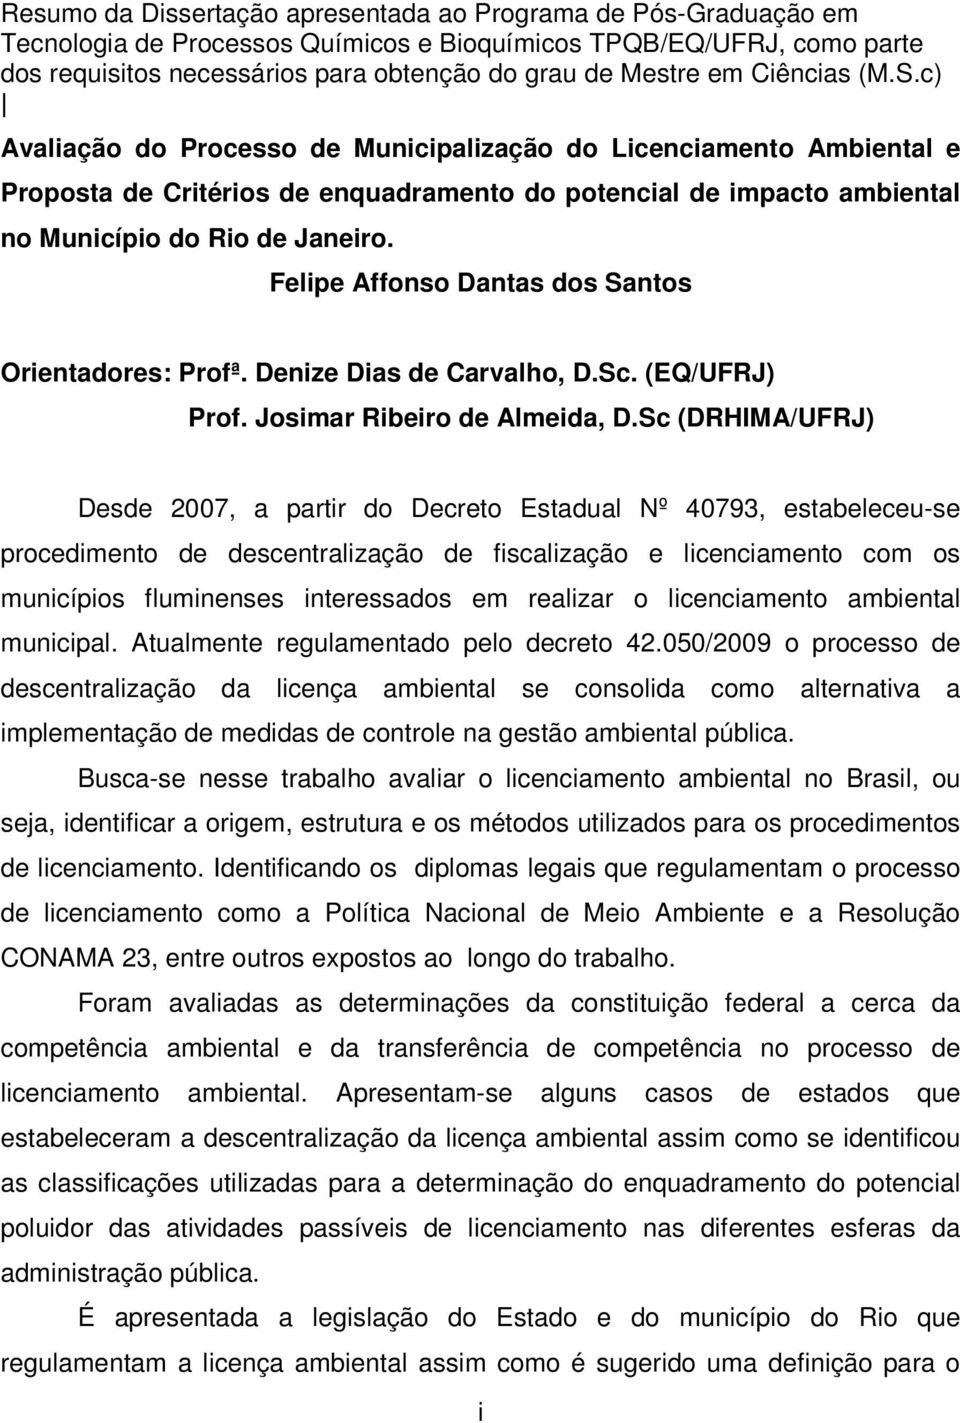 Felipe Affonso Dantas dos Santos Orientadores: Profª. Denize Dias de Carvalho, D.Sc. (EQ/UFRJ) Prof. Josimar Ribeiro de Almeida, D.